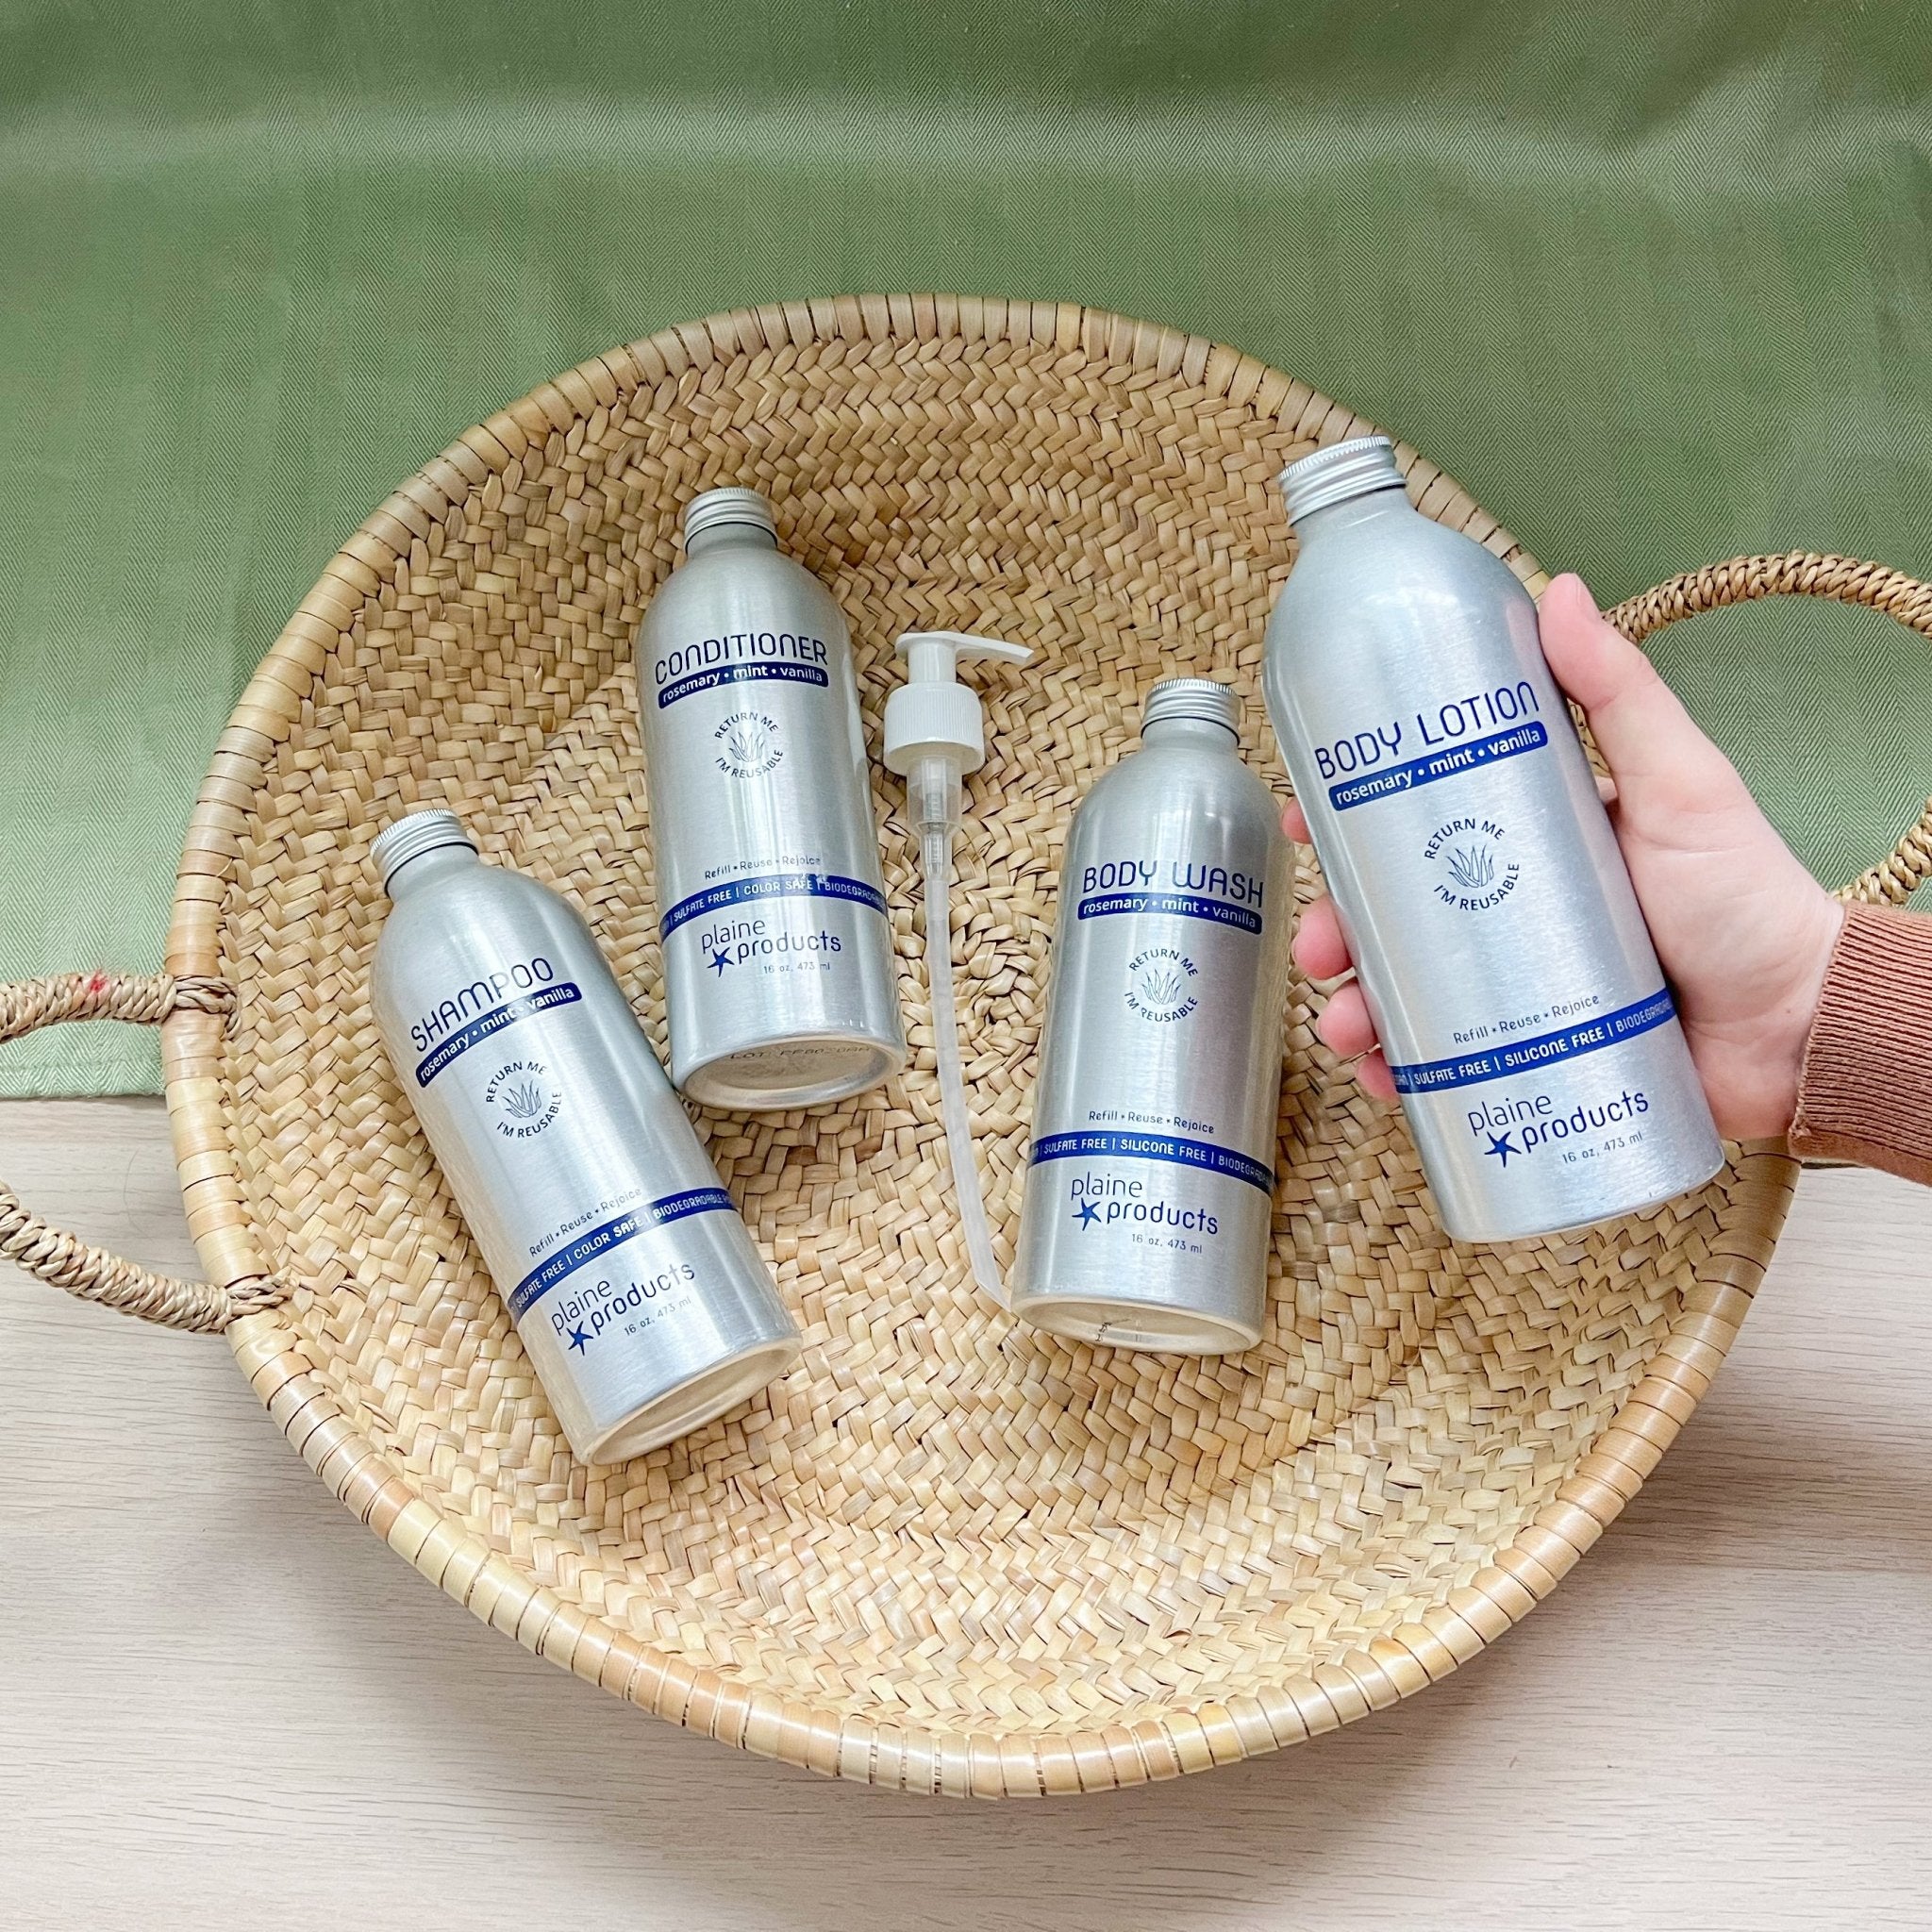 Plaine Products - Shampoo, Rosemary Mint Vanilla